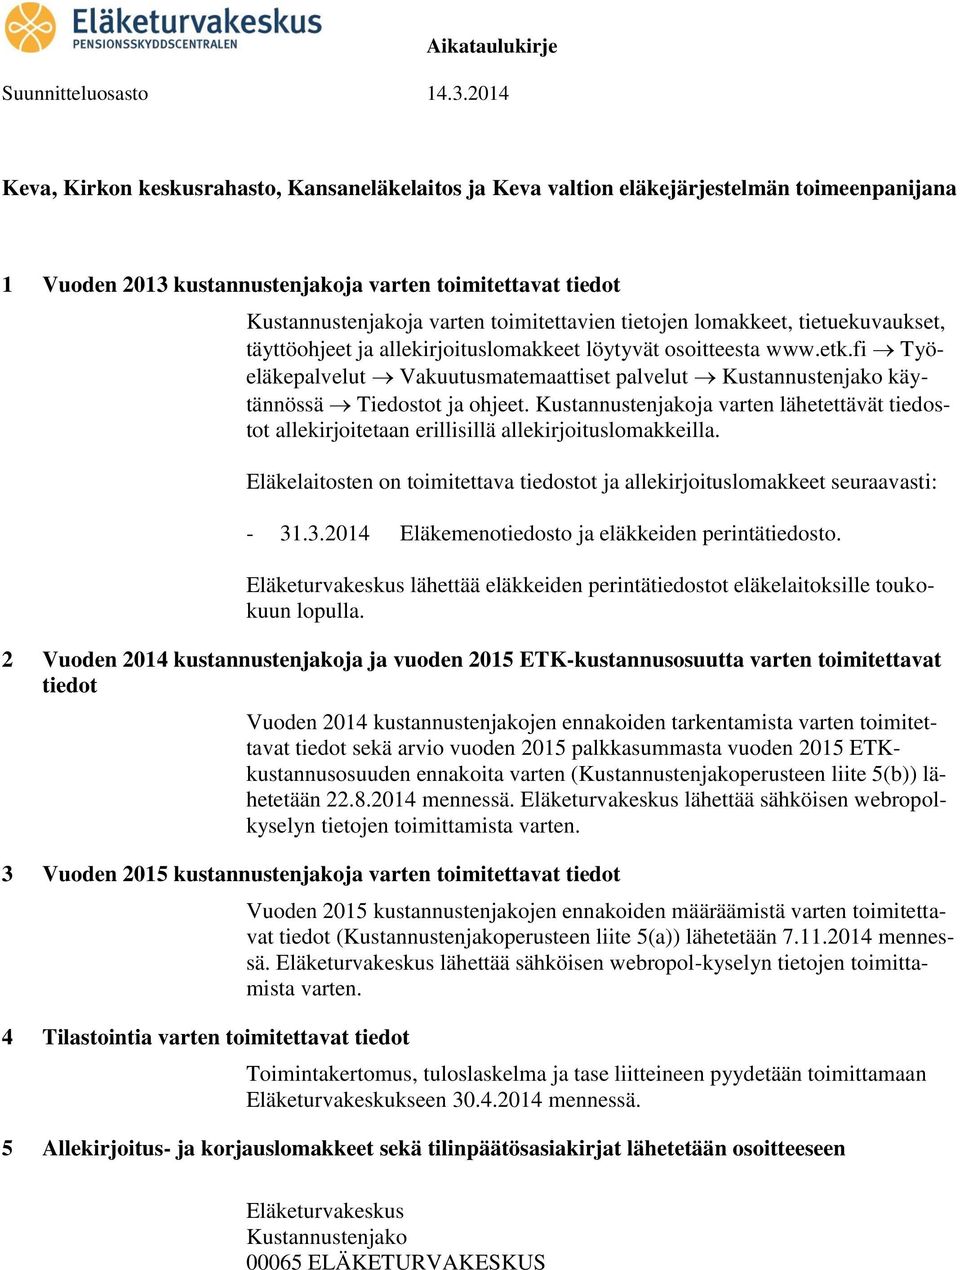 fi Työeläkepalvelut Vakuutusmatemaattiset palvelut Kustannustenjako käytännössä Tiedostot ja ohjeet.